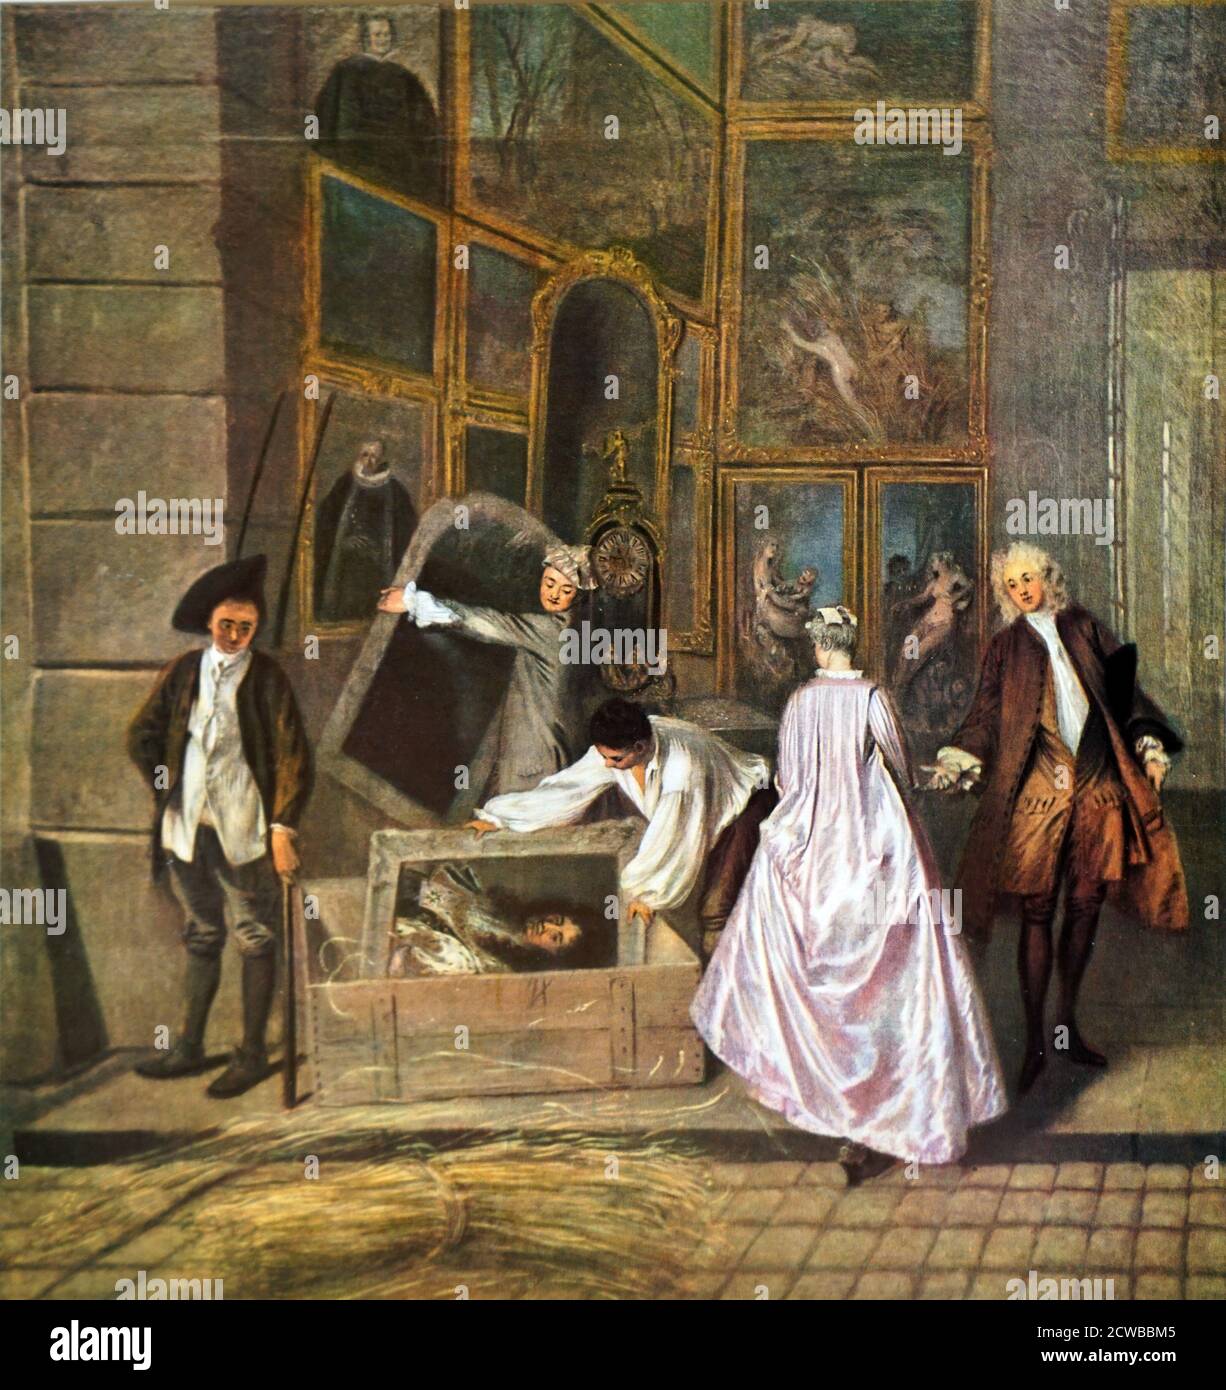 L'Enseigne de Gersaint; Öl auf Leinwand im Berliner Schloss Charlottenburg, von dem französischen Maler Jean-Antoine Watteau. Vollendet 1720-21. Es gilt als das letzte prominente Werk von Watteau, der einige Zeit später starb. Es wurde als Ladenschild für den marchand-mercier oder Kunsthändler Edme Francois Gersaint gemalt Stockfoto